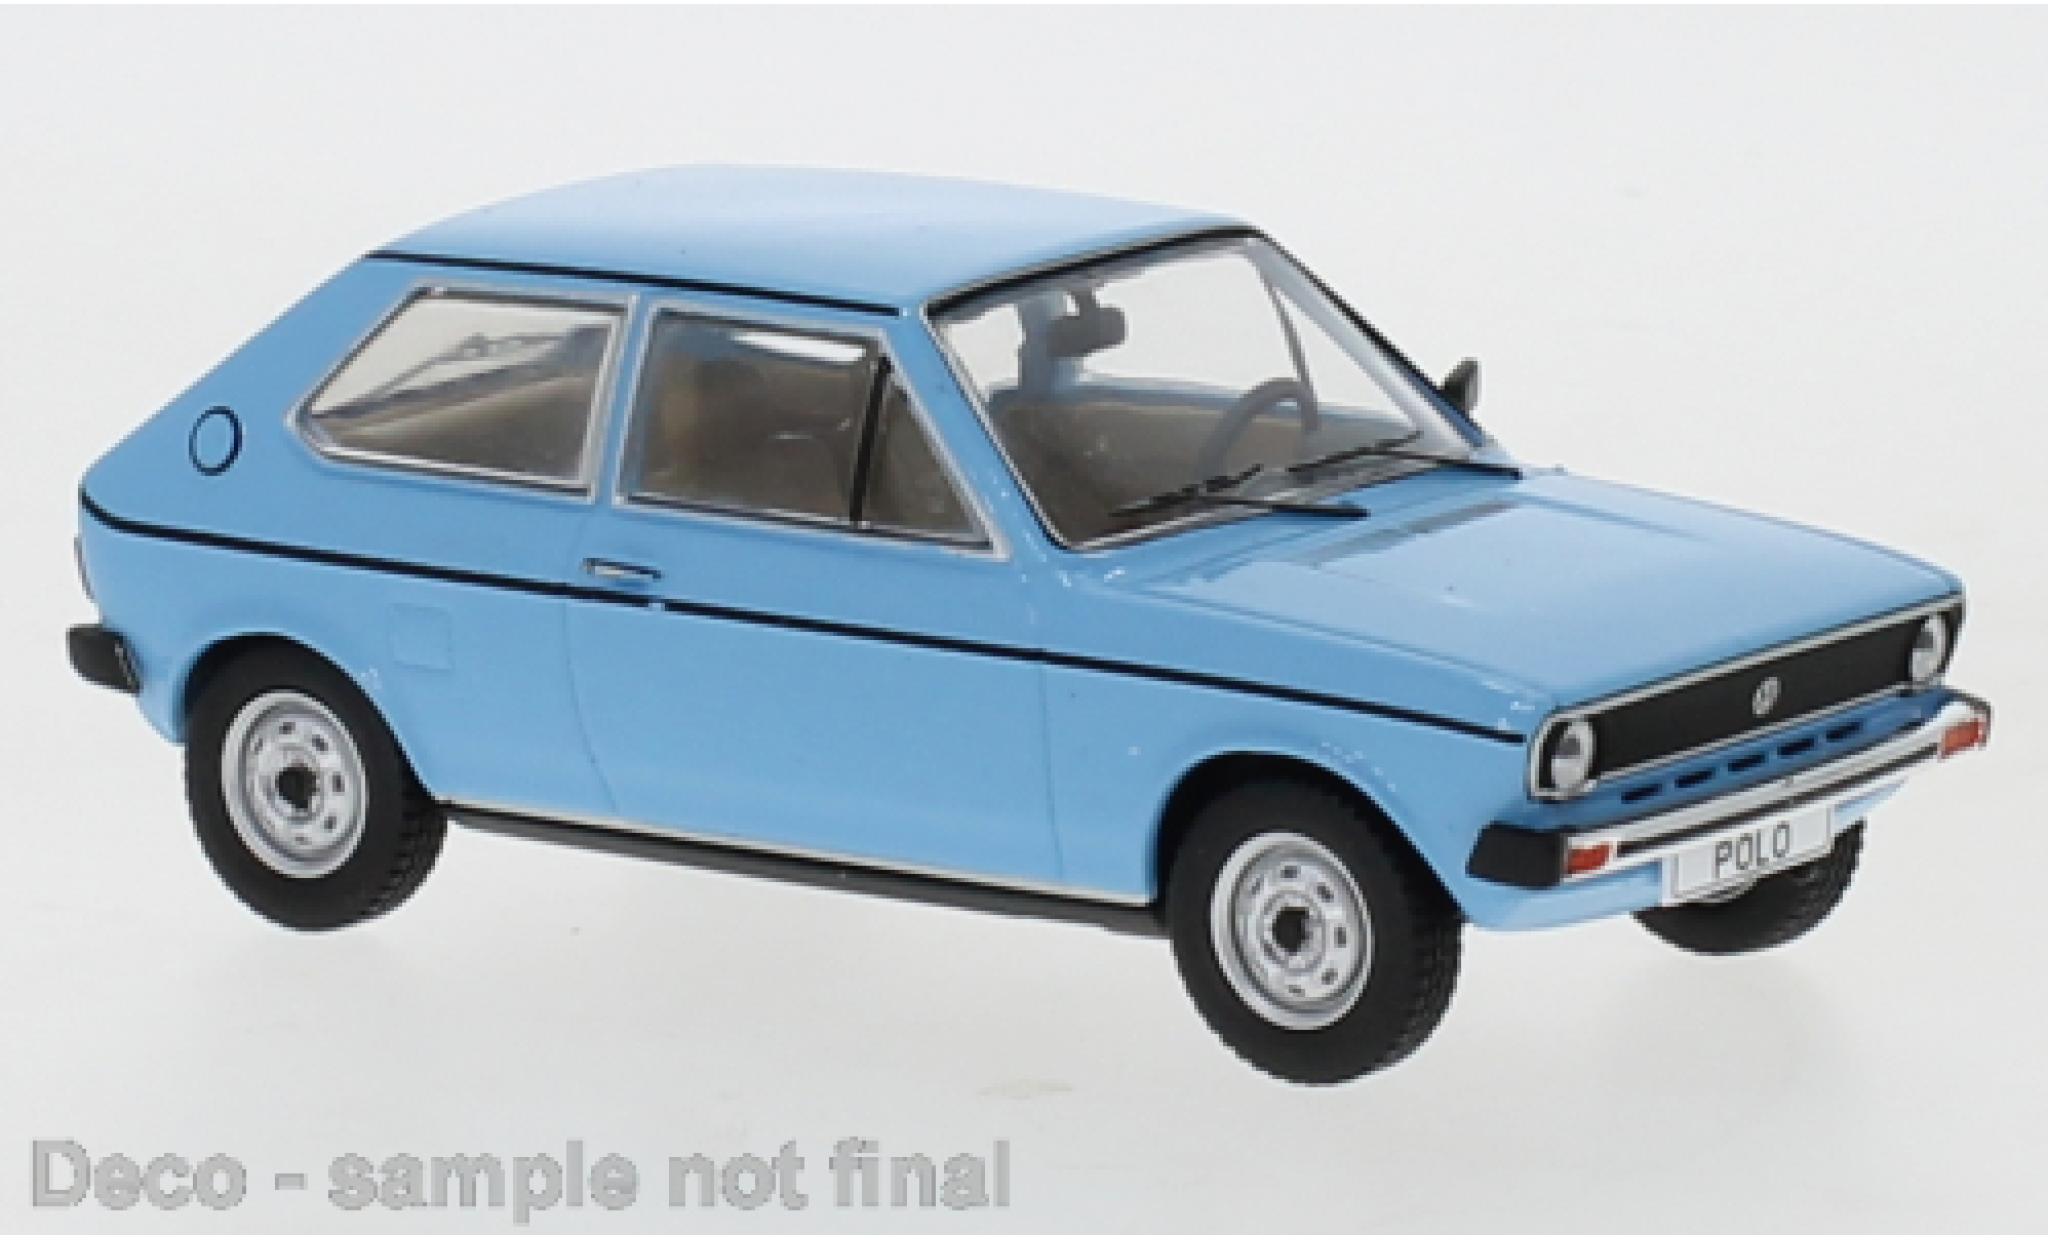 Volkswagen Polo 1/43 IXO (MK I) bleu clair 1975